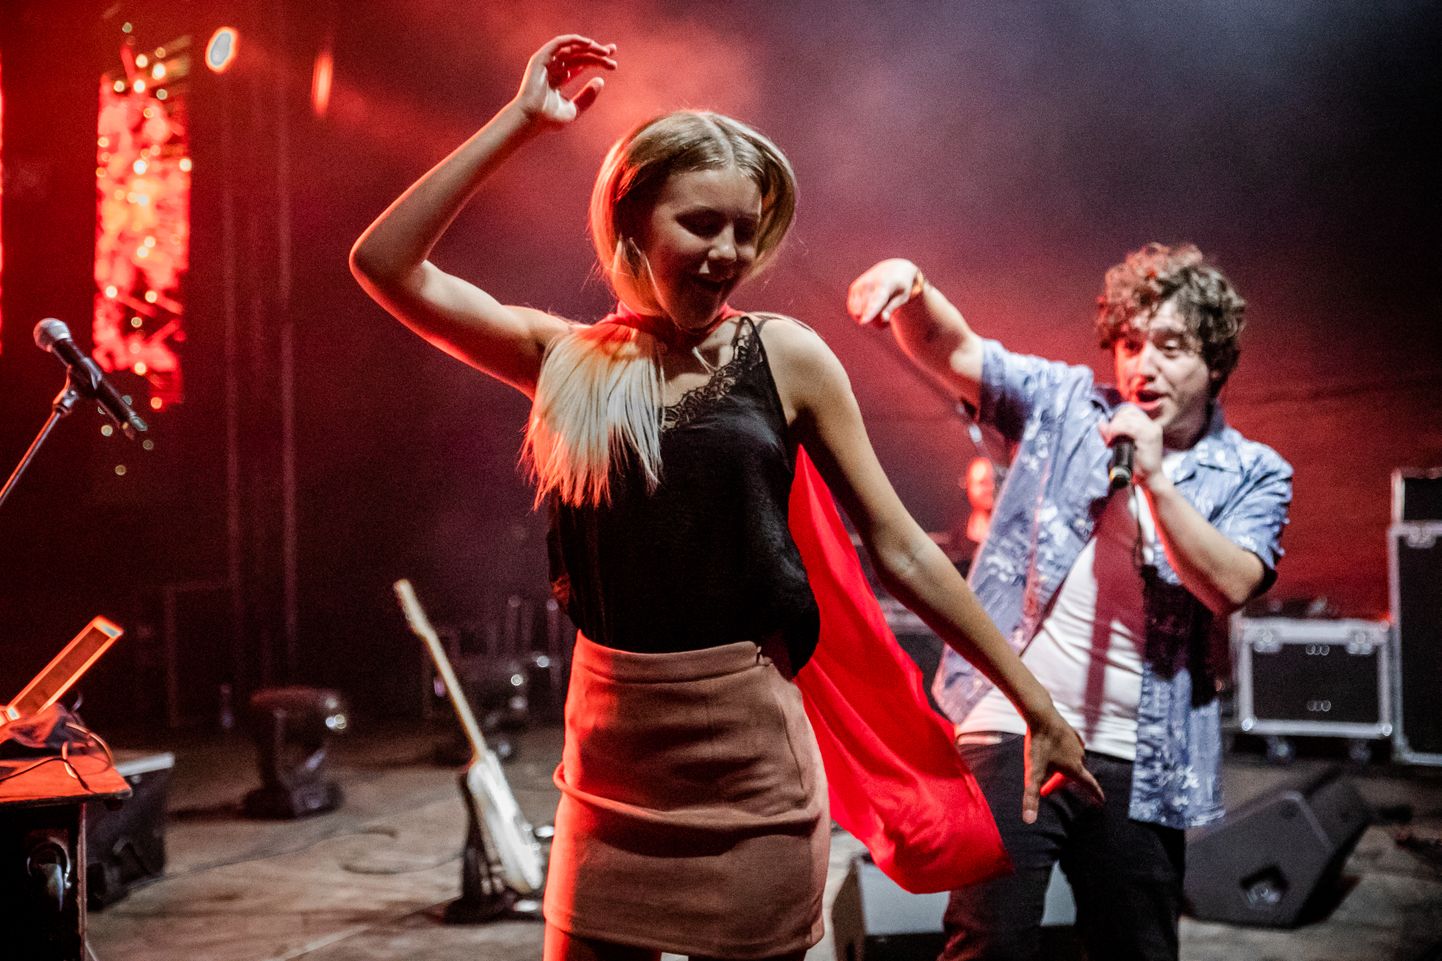 Viiendat aastat toimunud rannapeol Valgeranna festival astusid üles muuhulgas Eesti hetke kuumim “magamistoa räppar” Nublu, räpipunt 5MIINUST ning Hollandist pärit laulja Janieck.